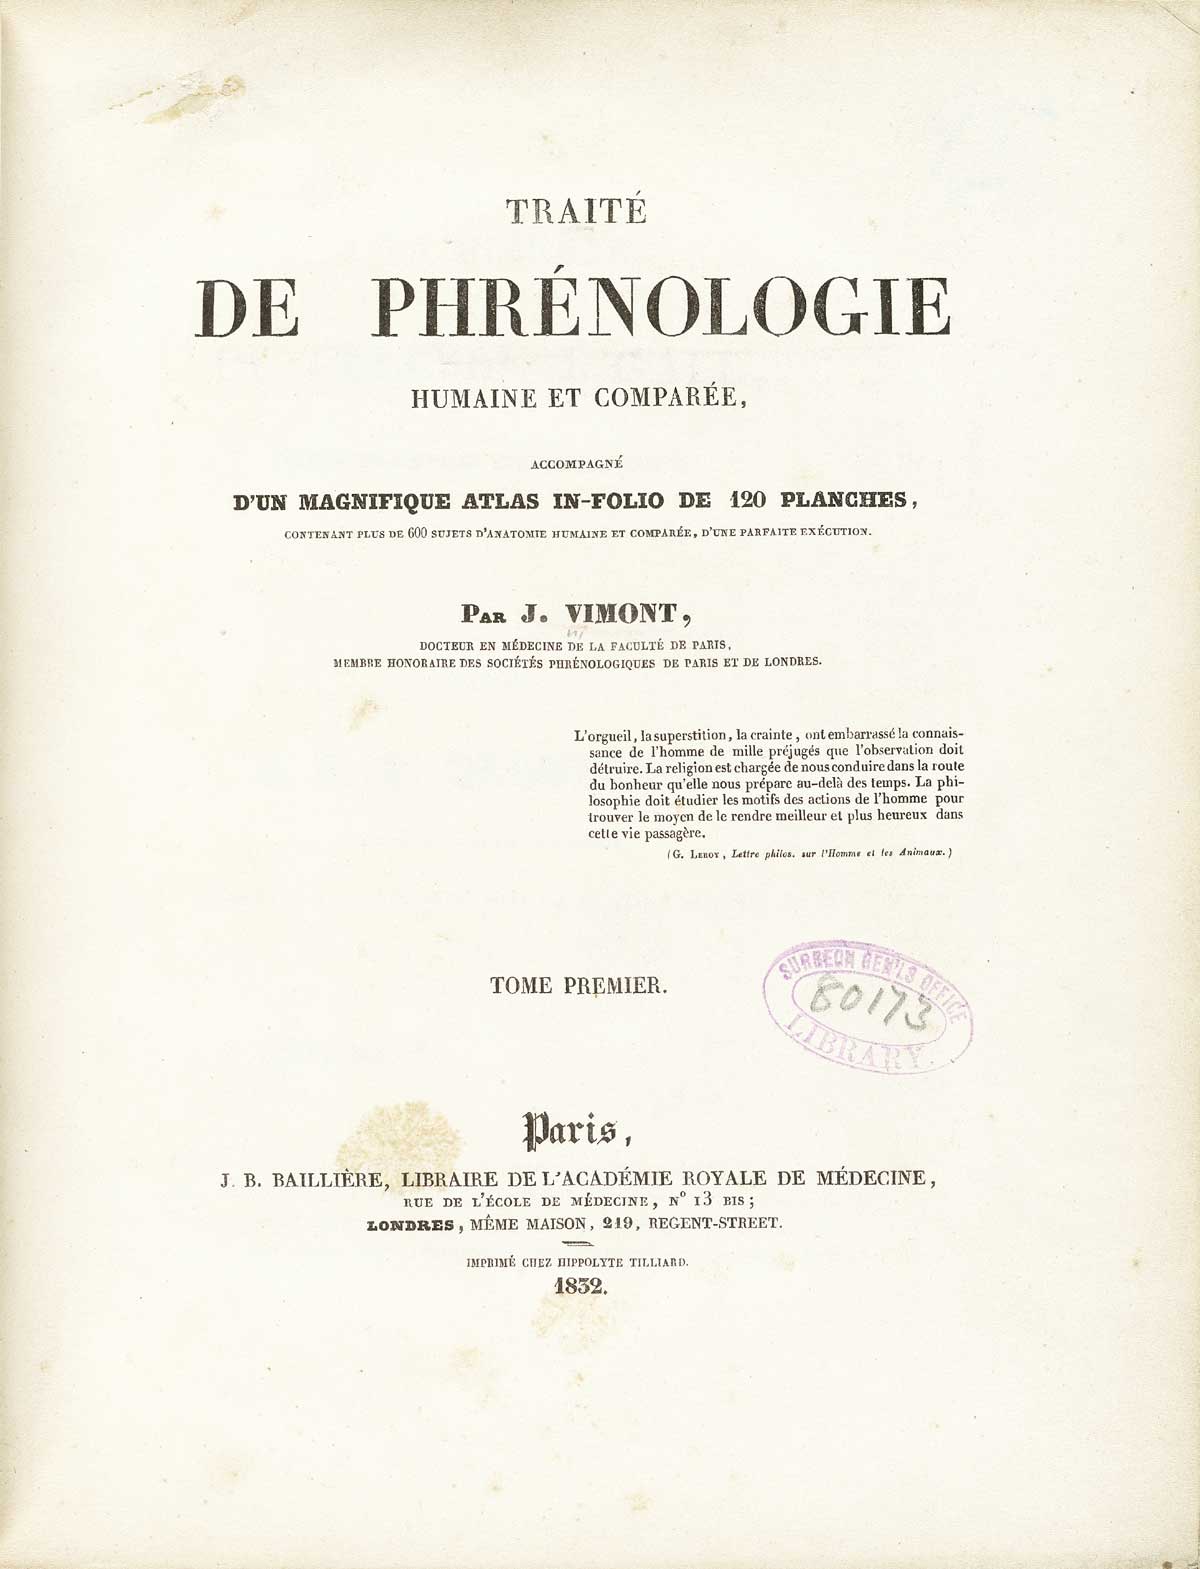 Title page of volume 1 of Joseph Vimont's Traité́ de phrénologie humaine et comparée.